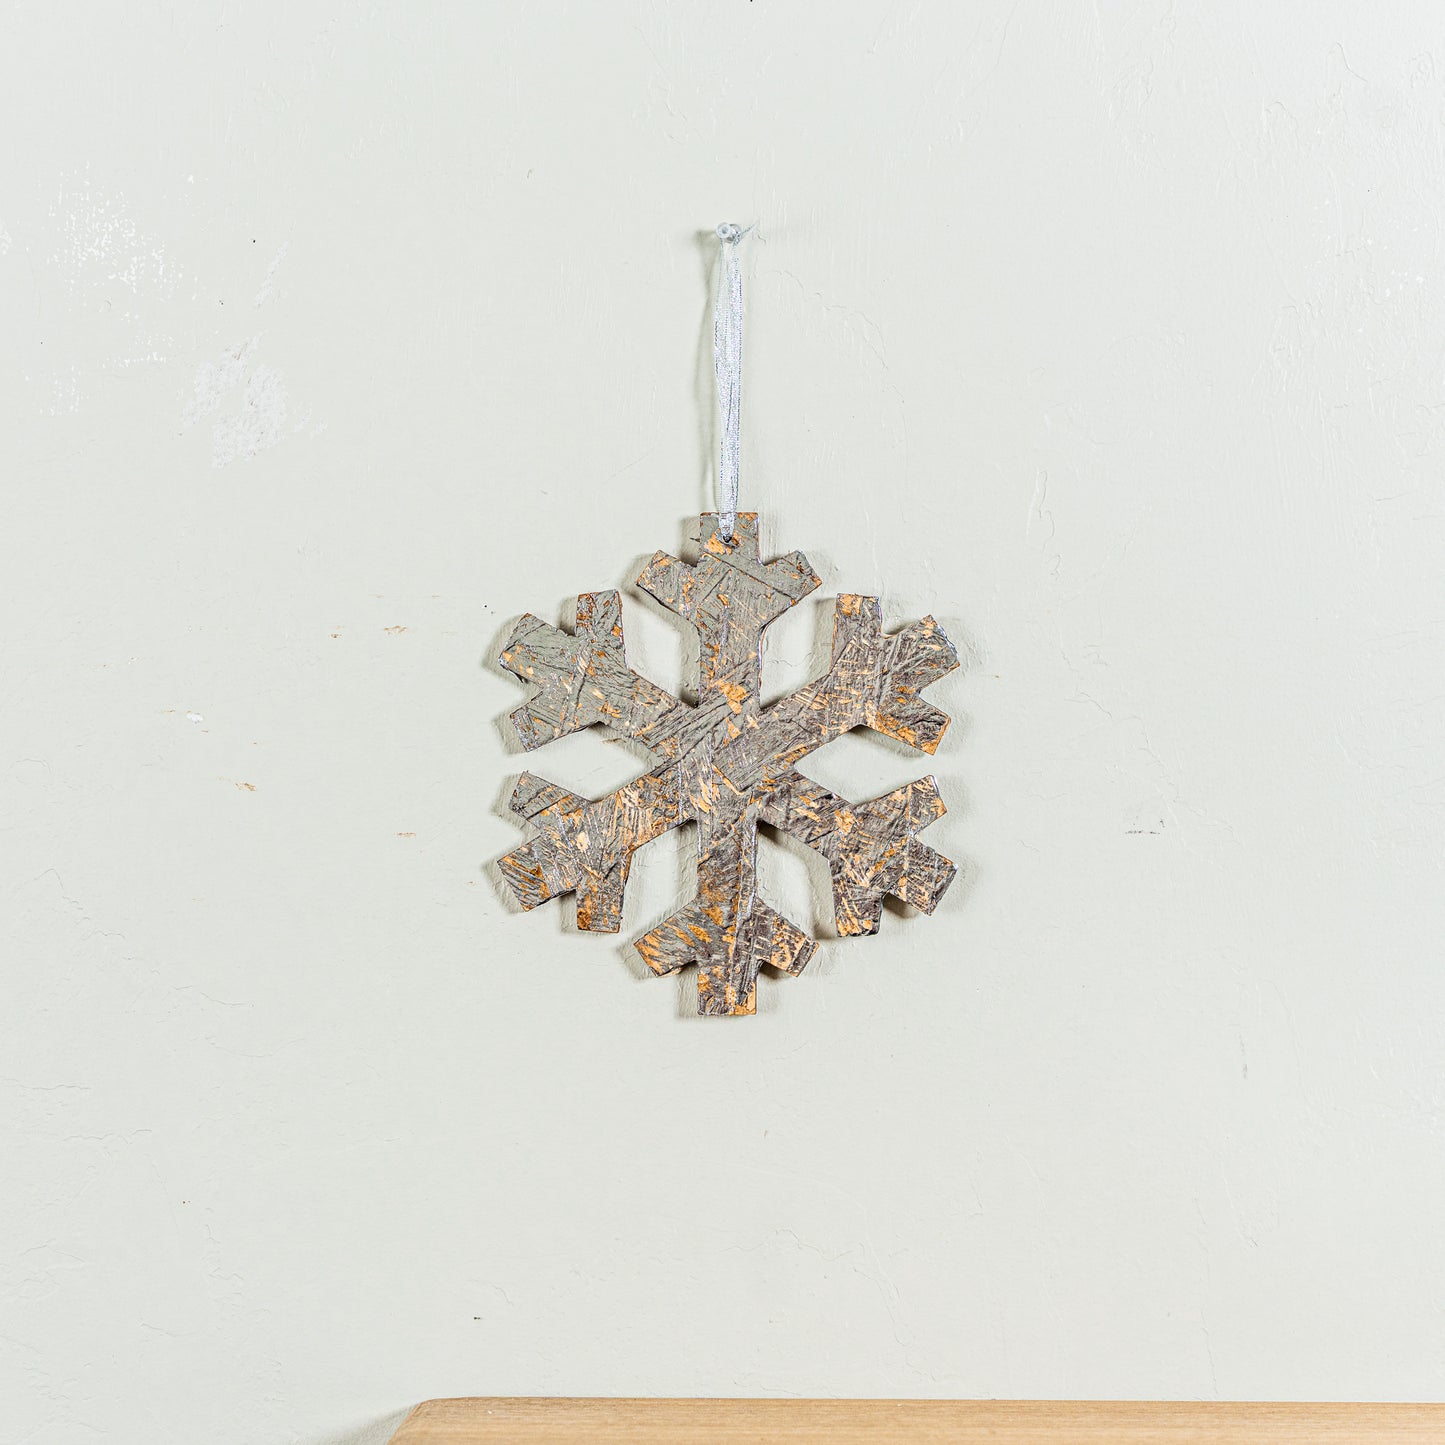 Rustic Silver Snowflake Ornament, Small